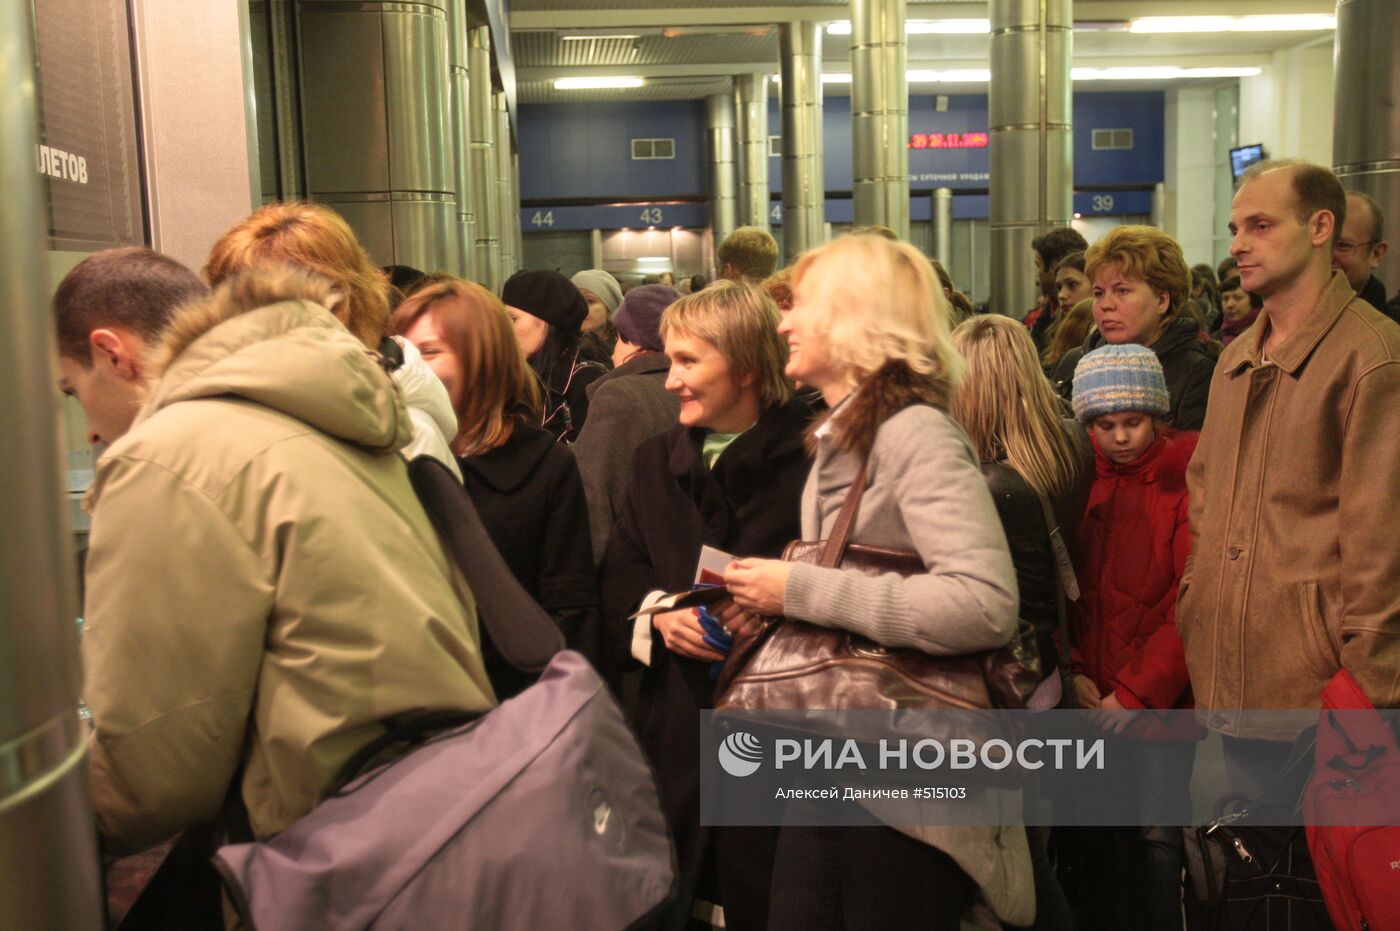 Пассажиры сдают билеты на вокзале в Санкт-Петербурге